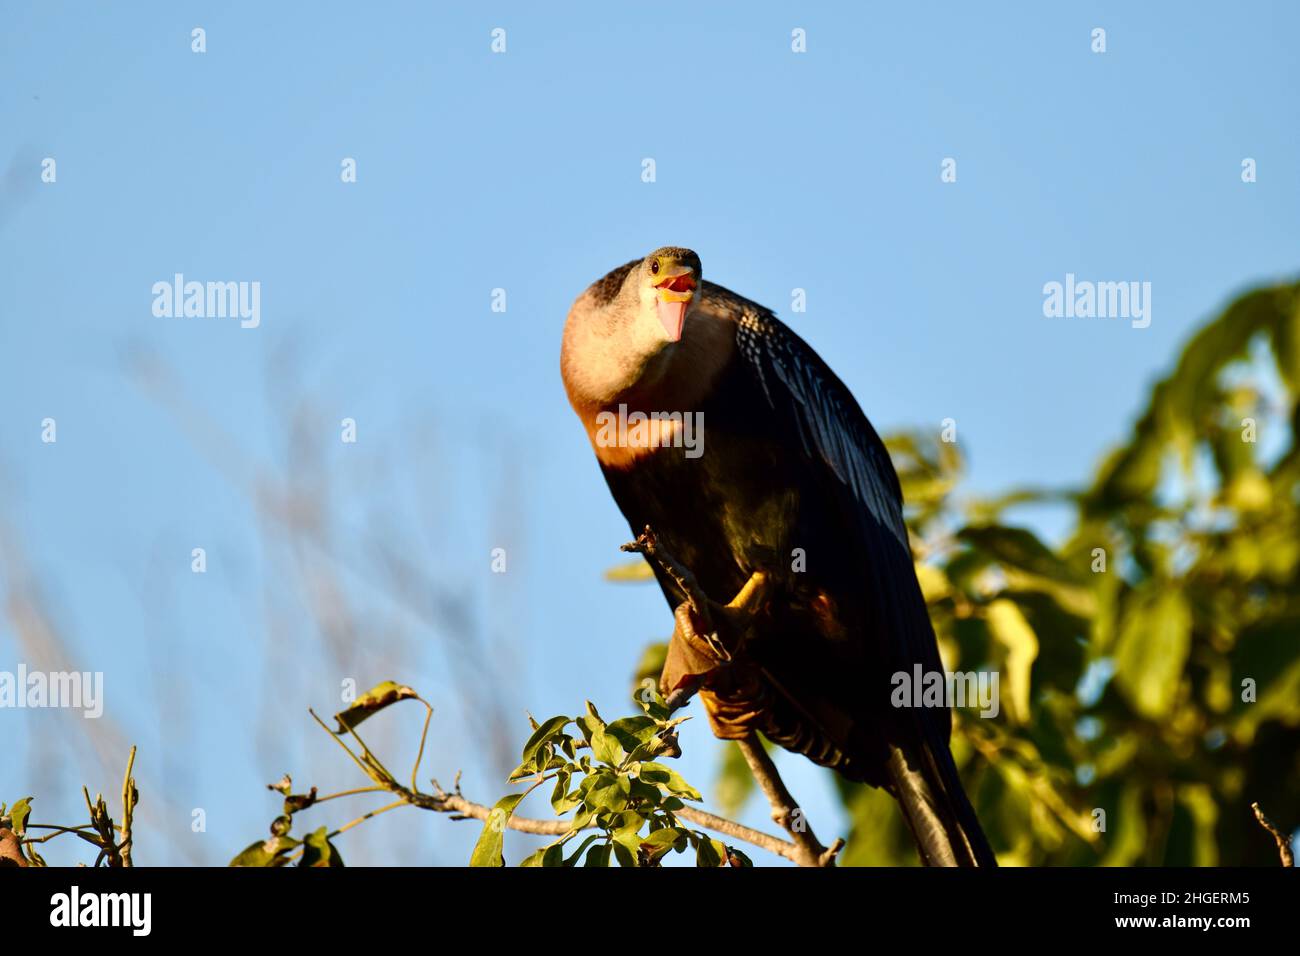 Anhinga (Anhinga anhinga), auch bekannt als Schlangenkäfer, amerikanischer Darter oder wassertürke in einem Baum in den Mangroven von San Pedro, Belize, mit Blick auf die Kamera Stockfoto